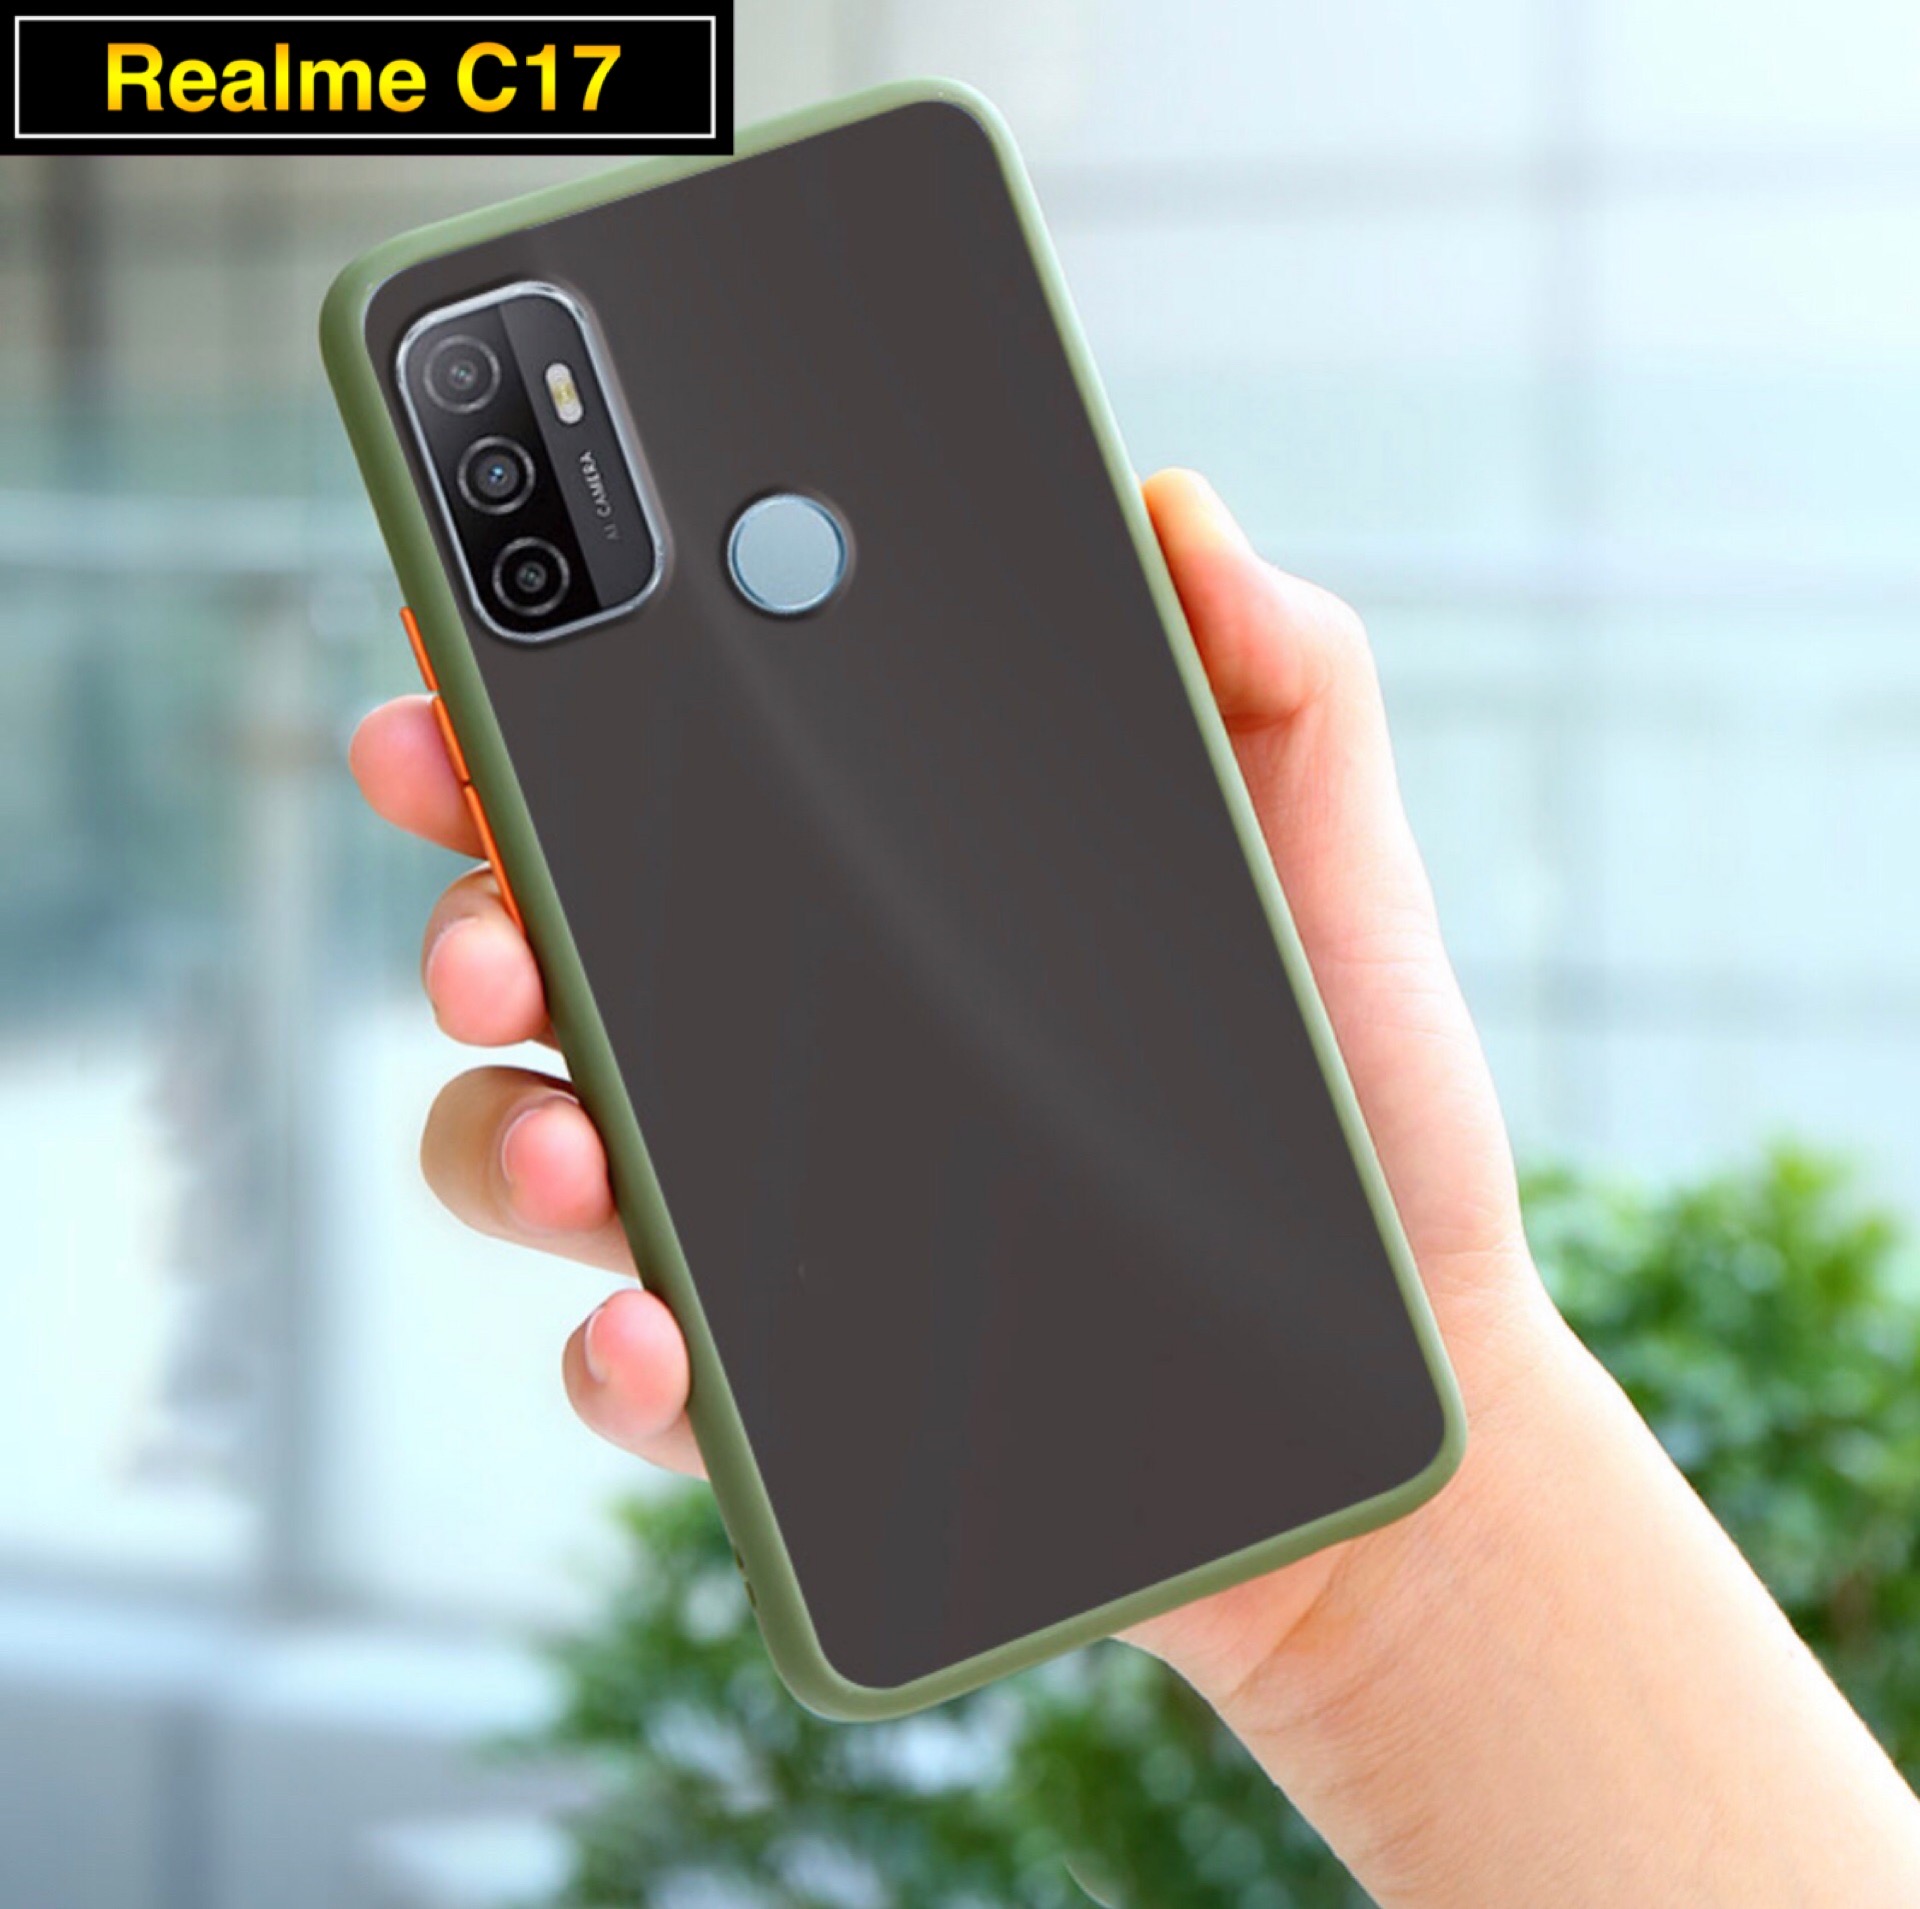 เคสโทรศัพท์ เรียวมี Case Realme C17 เคสกันกระแทก ขอบสีหลังขุ่น เคส realme C17